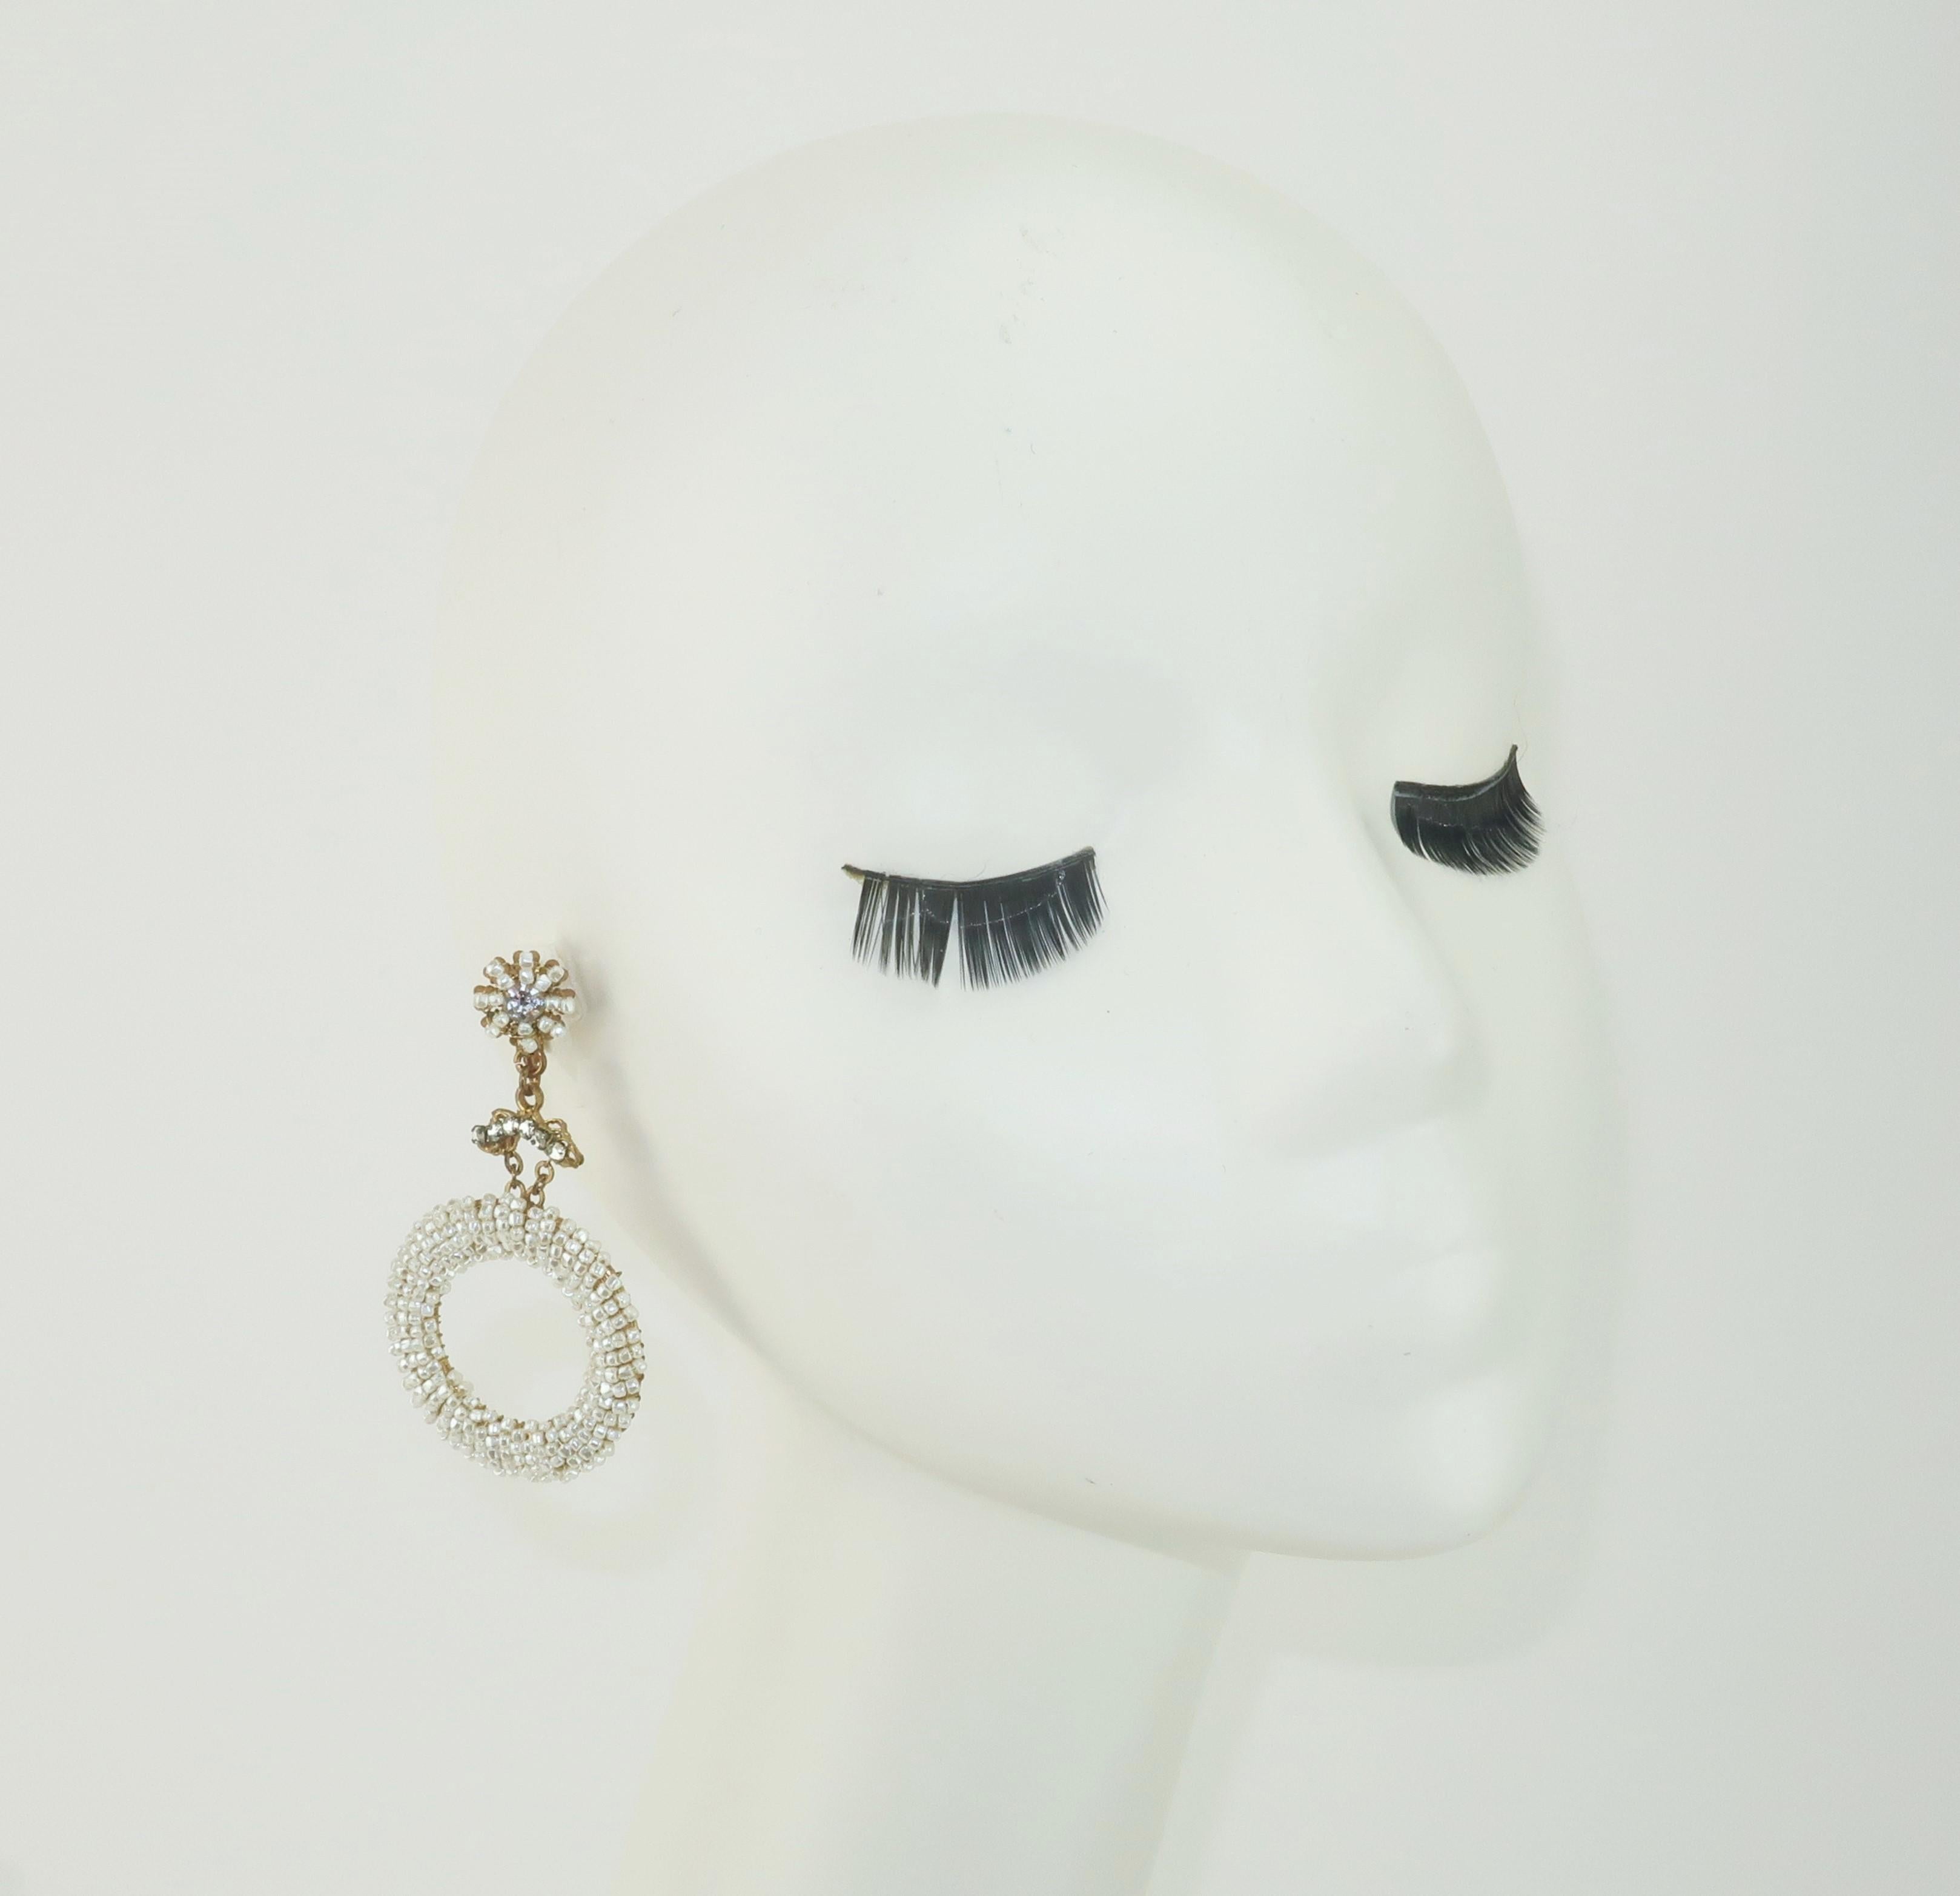 Women's Miriam Haskell Pearl & Crystal Rhinestone Hoop Earrings, C.1960 For Sale